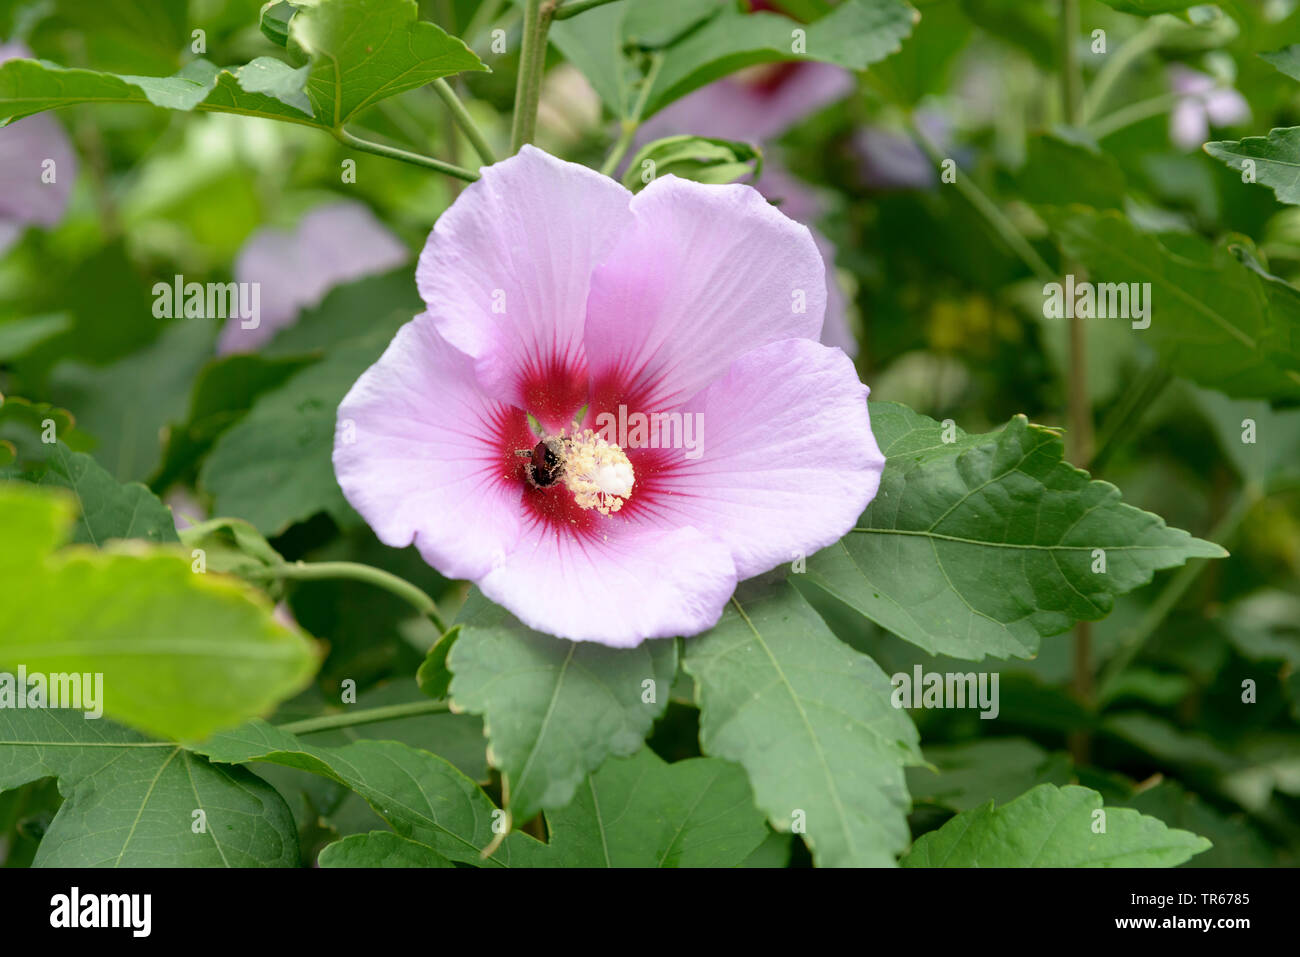 shrubby althaea, rose-of-Sharon (Hibiscus syriacus 'Resi', Hibiscus syriacus Resi, Hibiscus 'Resi', Hibiscus Resi), flower of cultivar Resi Stock Photo